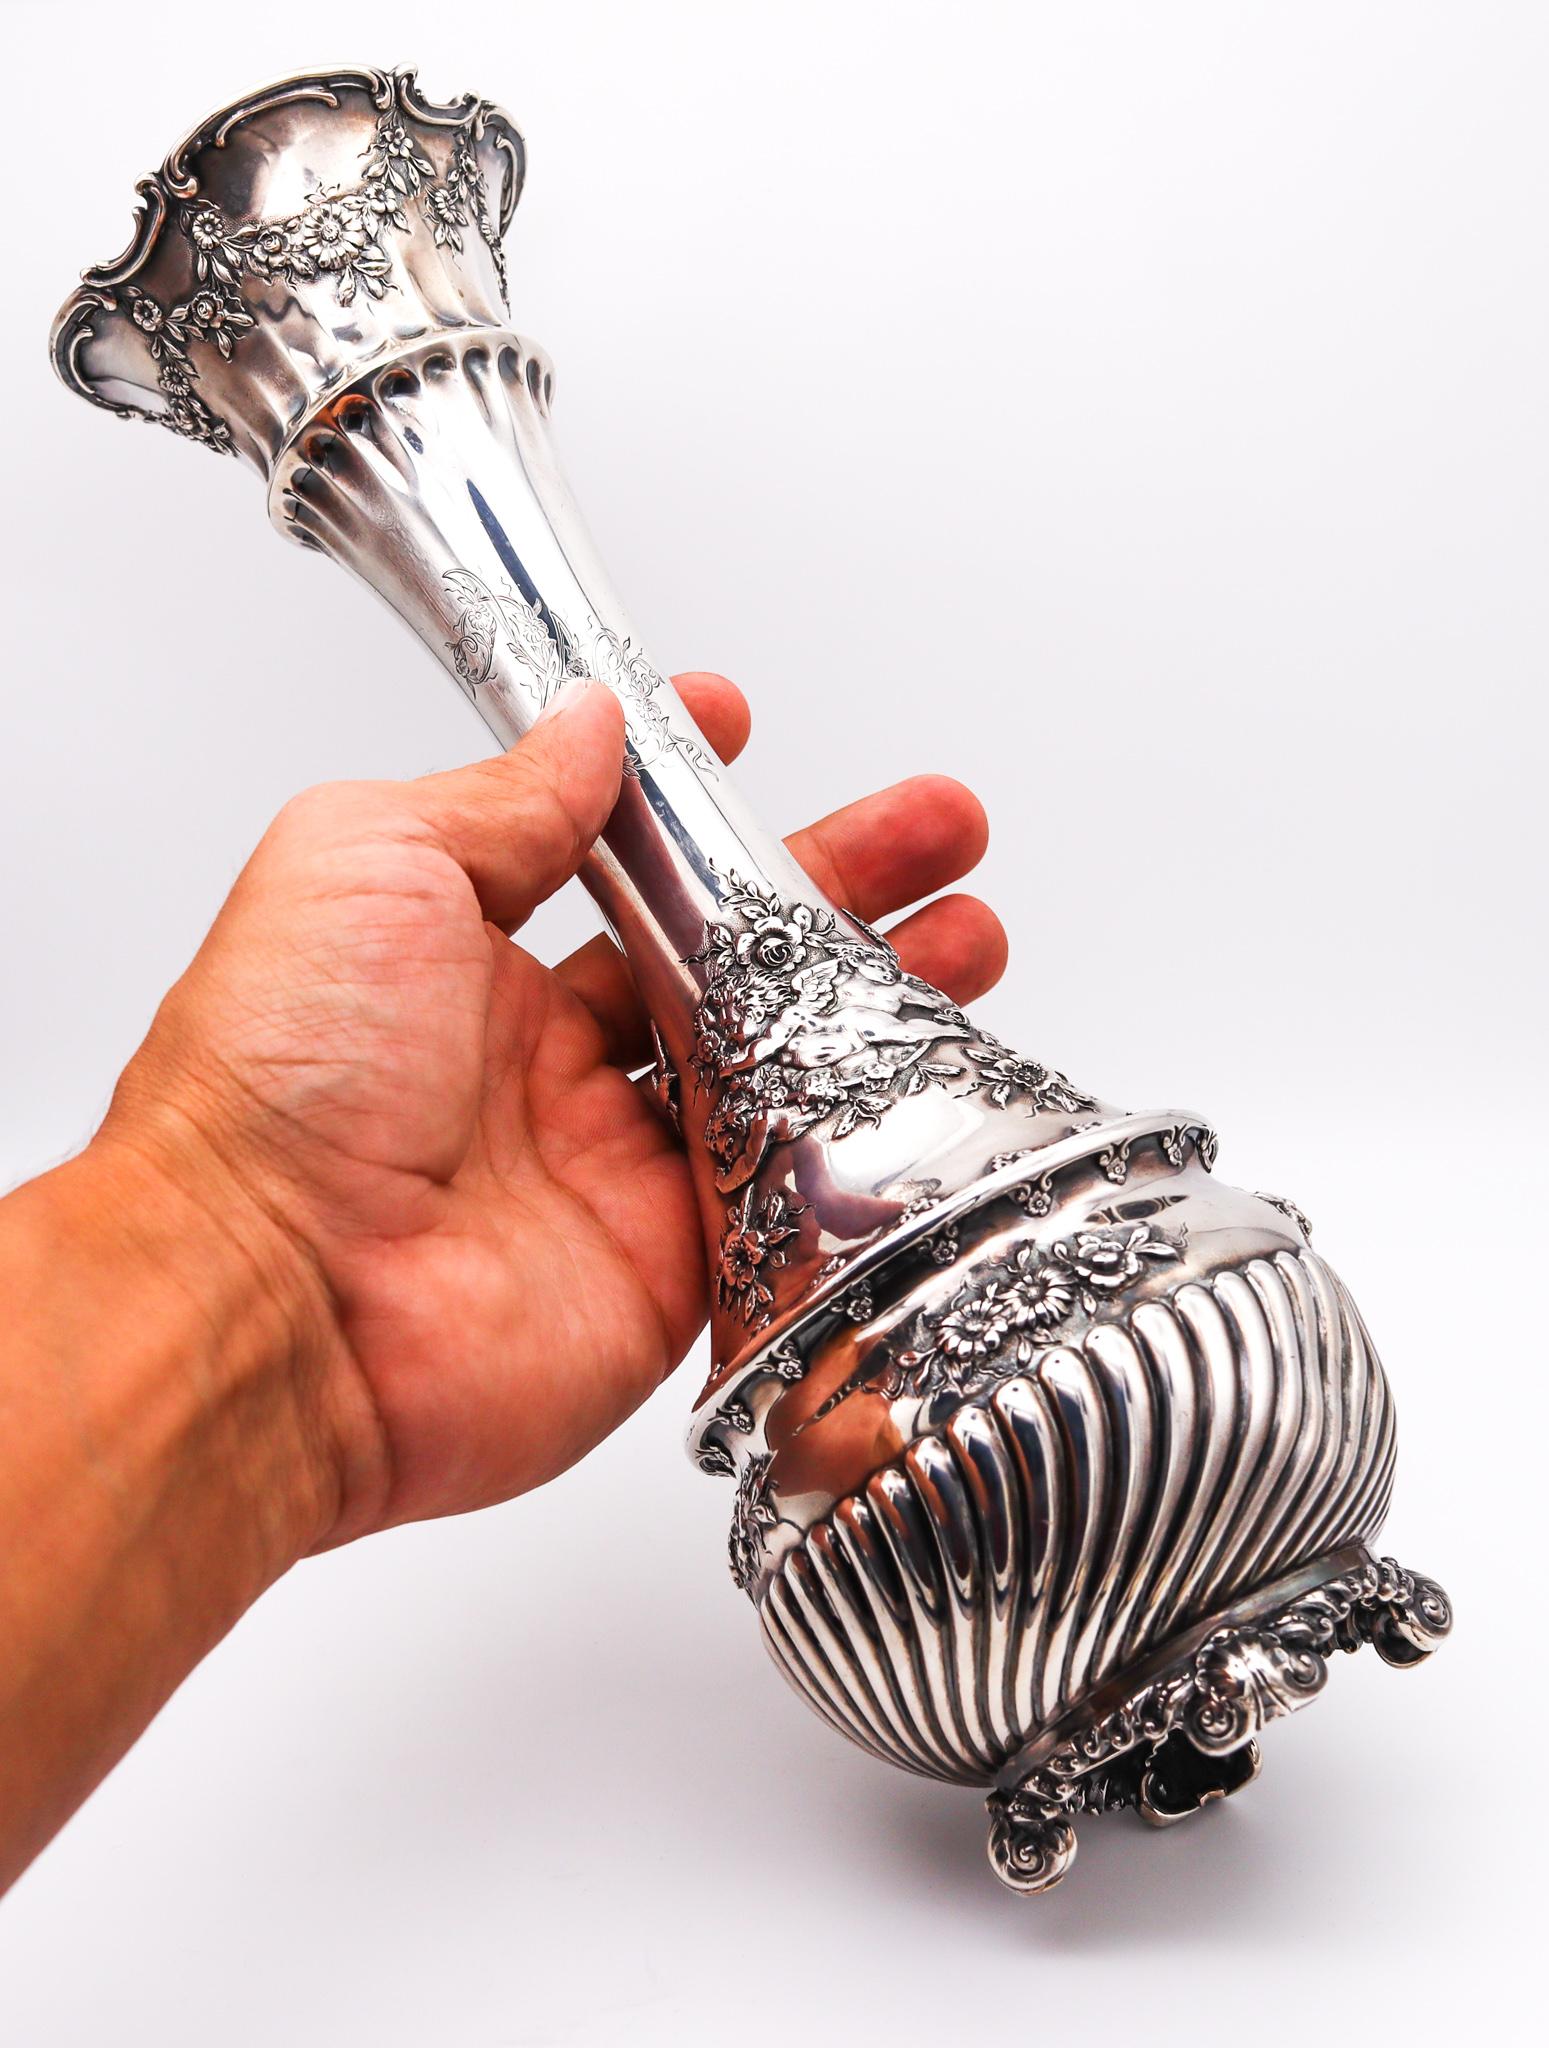 Vase trompette conçu par Tiffany & Co.

Magnifique vase trompette ancien réalisé dans les studios Tiffany à New York, entre 1900 et 1901. Ce modèle a été conçu sous la présidence de Charles L.A. Tiffany pendant les périodes de transition entre la